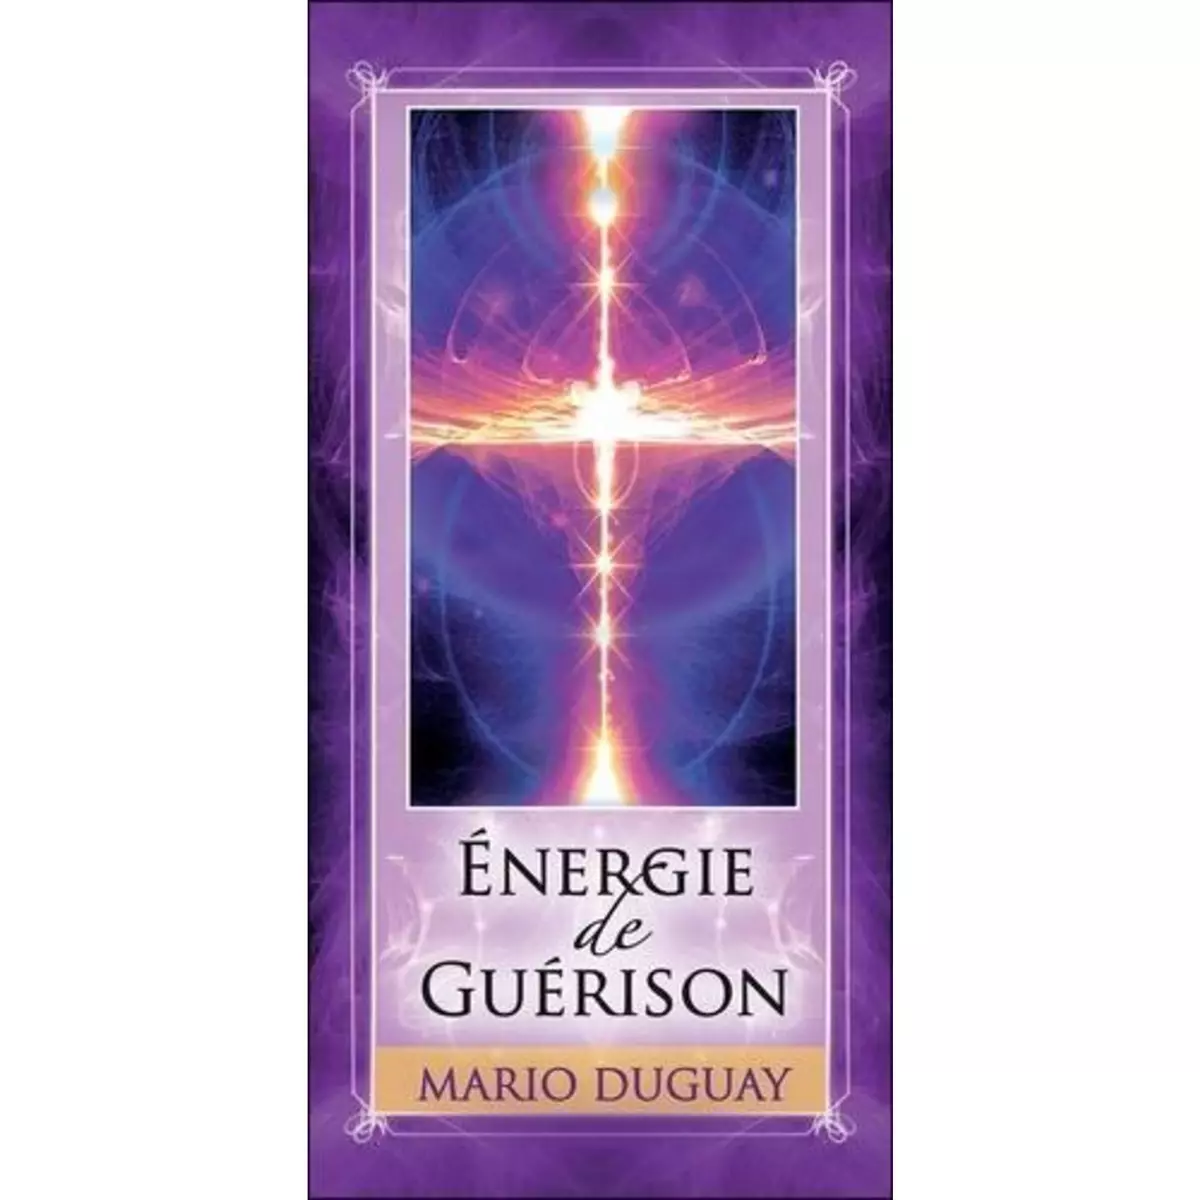  ENERGIE DE GUERISON, Duguay Mario